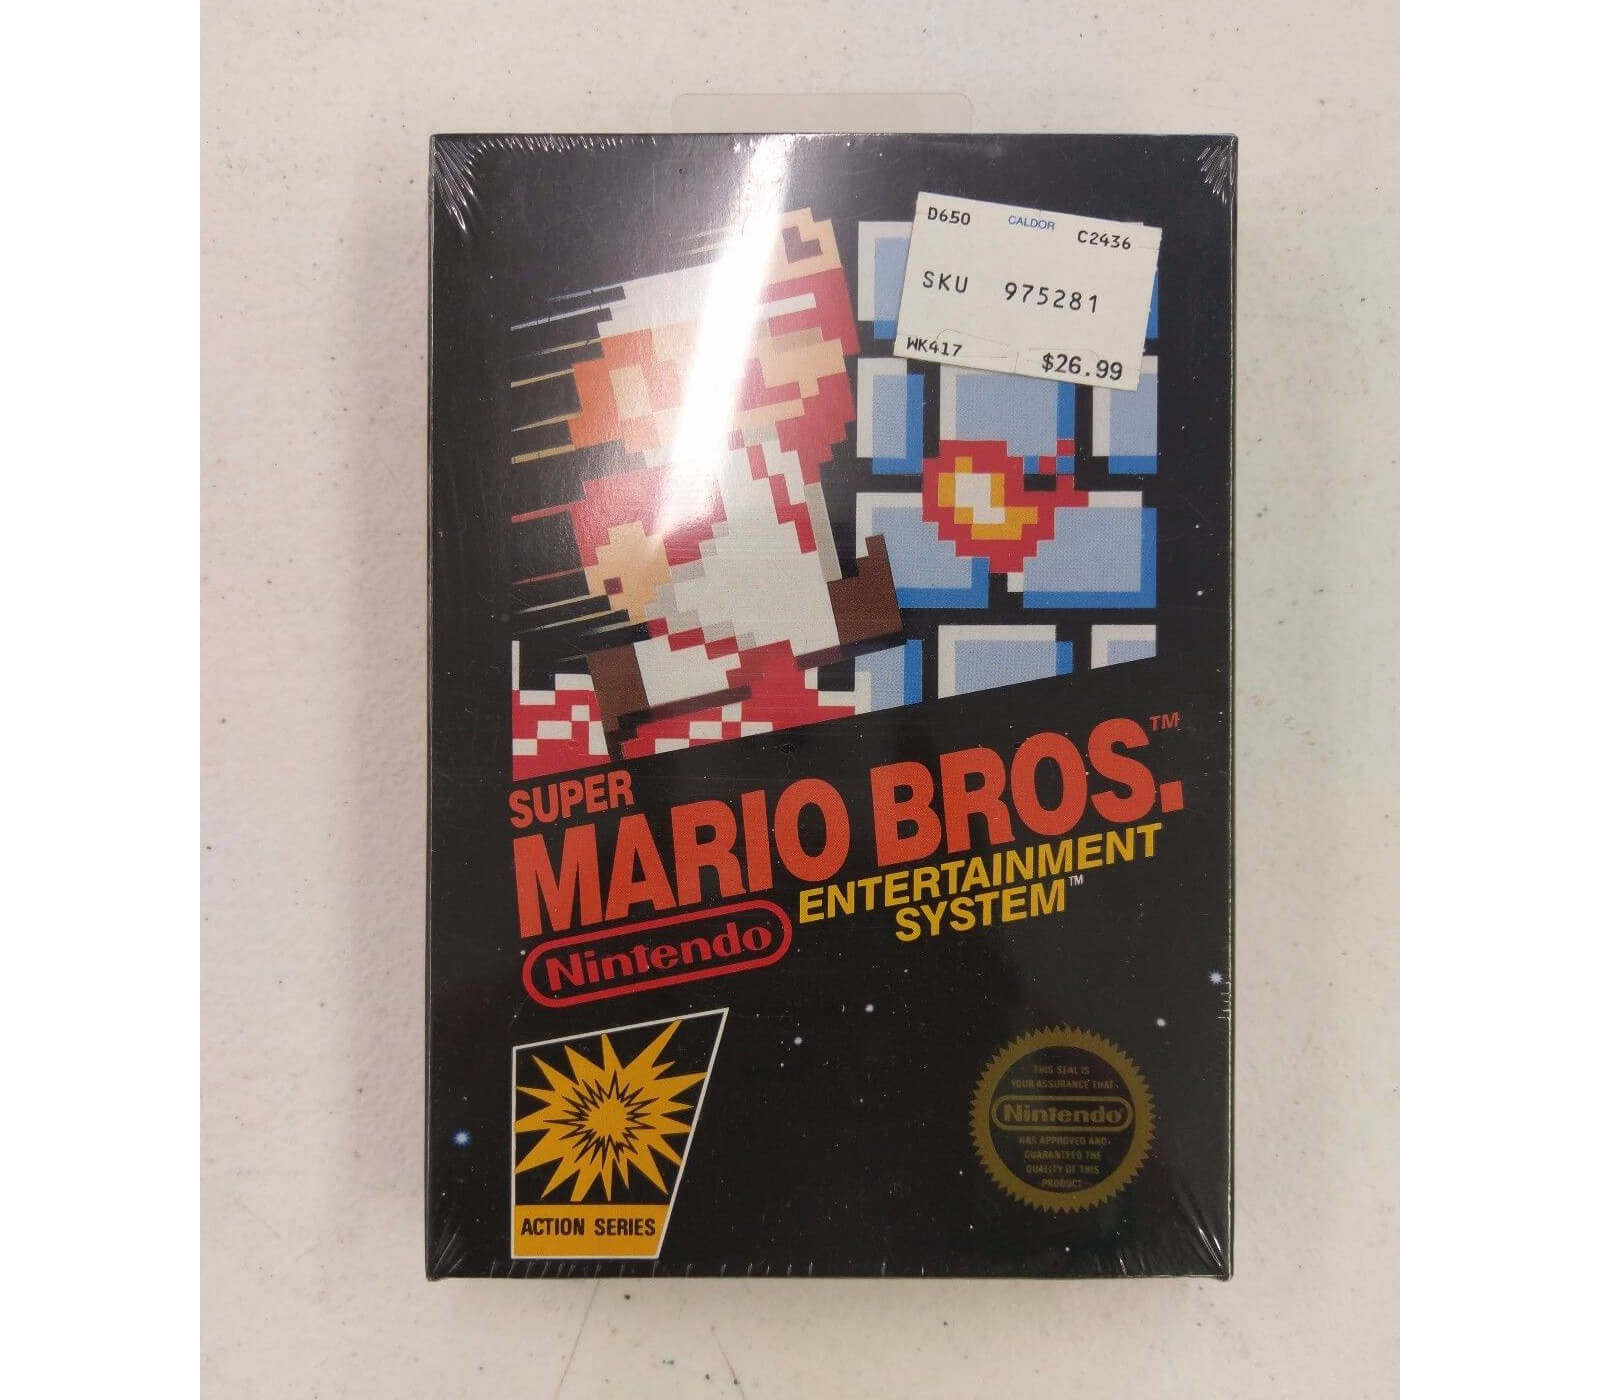 Cartucho de Super Mario Bros. lacrado